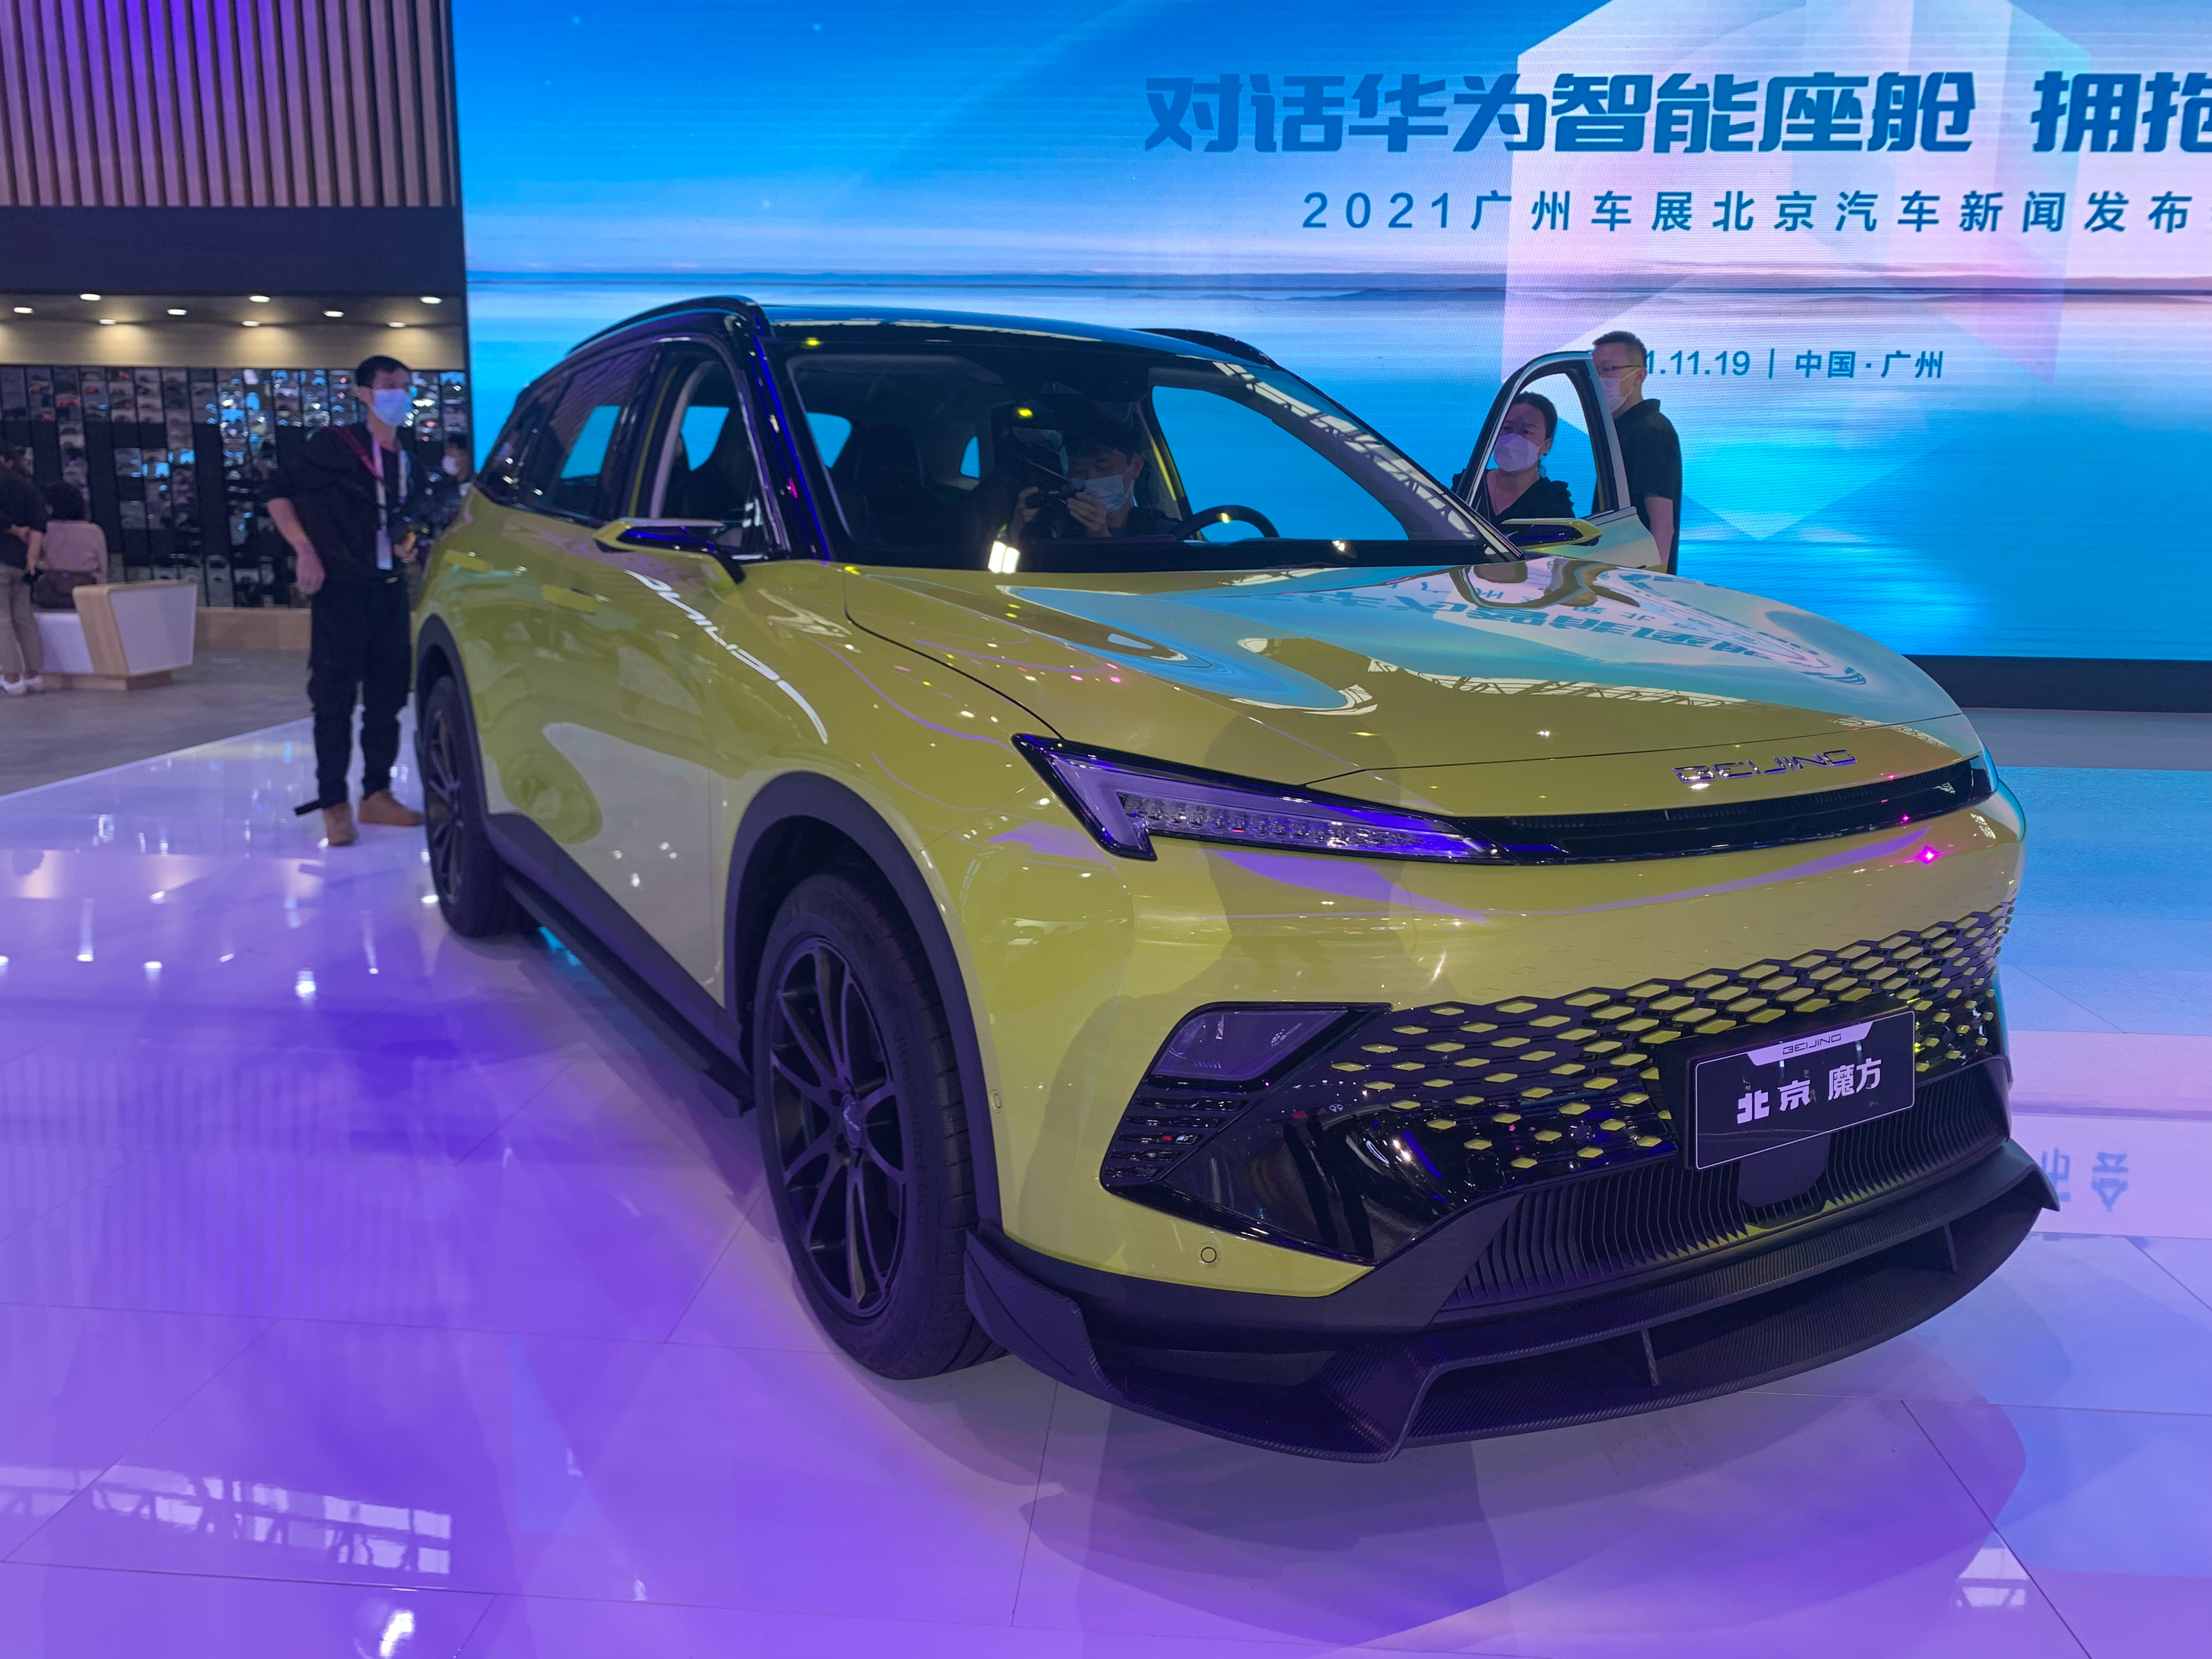 2021年广州车展:北京汽车全新车型魔方实车亮相